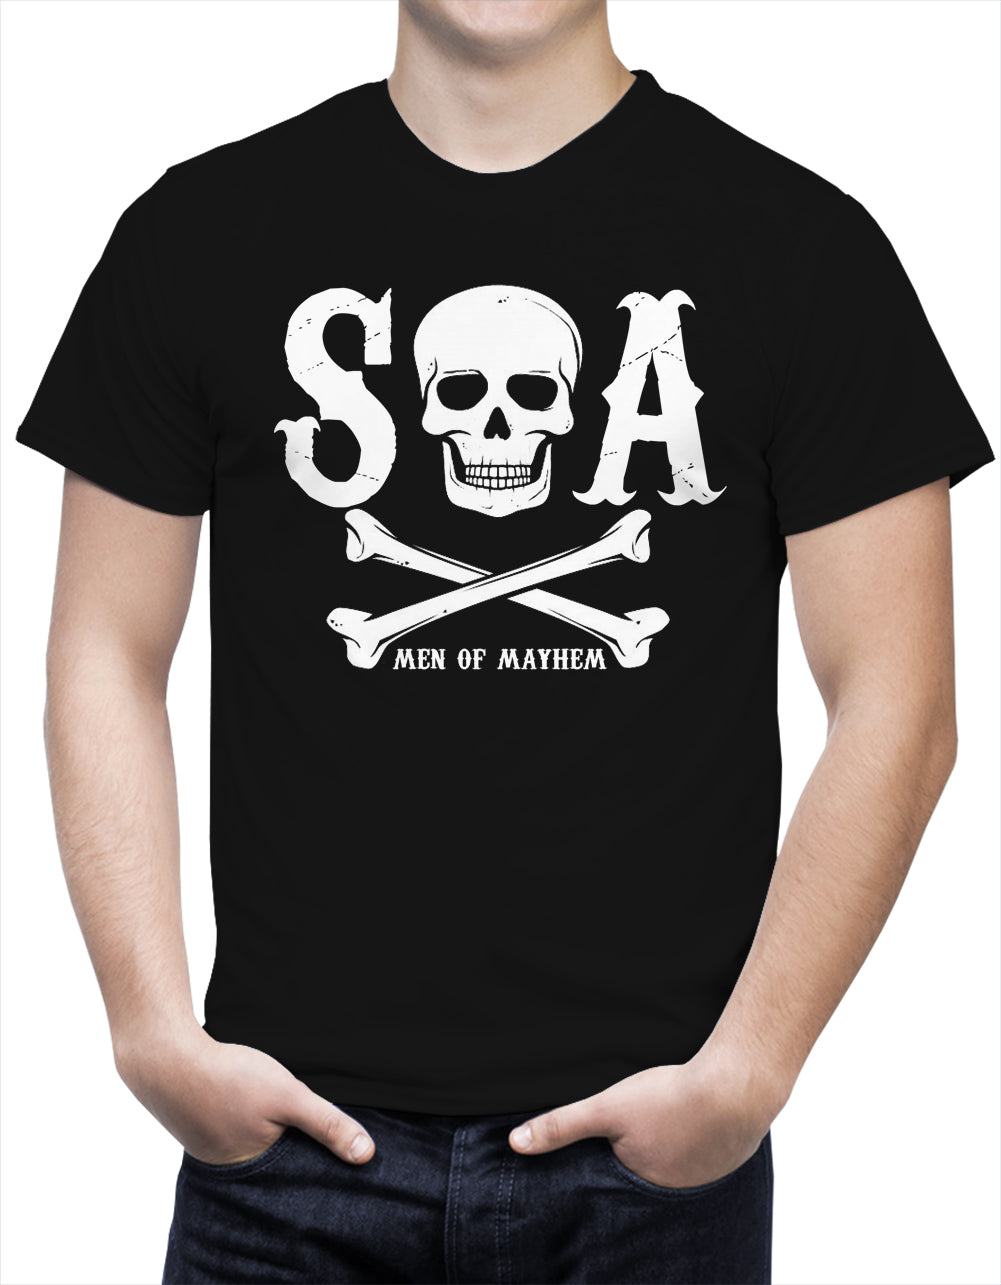 SOA Men Of Mayhem Skull and Crossbones Men's T-Shirt (Black)